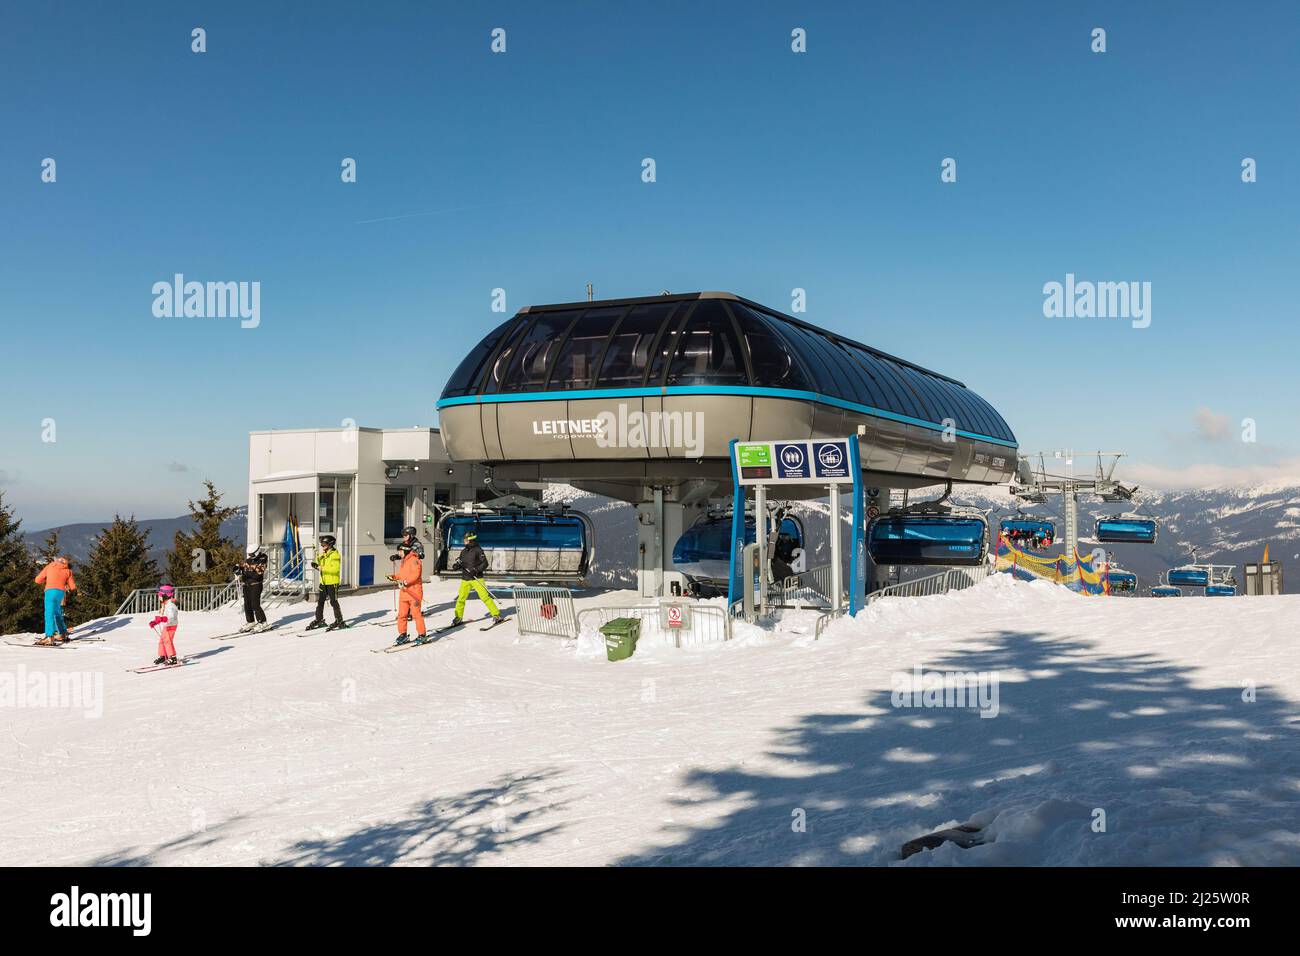 SPINDLERUV MLYN, REPÚBLICA CHECA - 10 de marzo de 2022: Avión, la estación más alta del teleférico. Hromovka en la montaña Krkonose, el esquí checo más popular Foto de stock